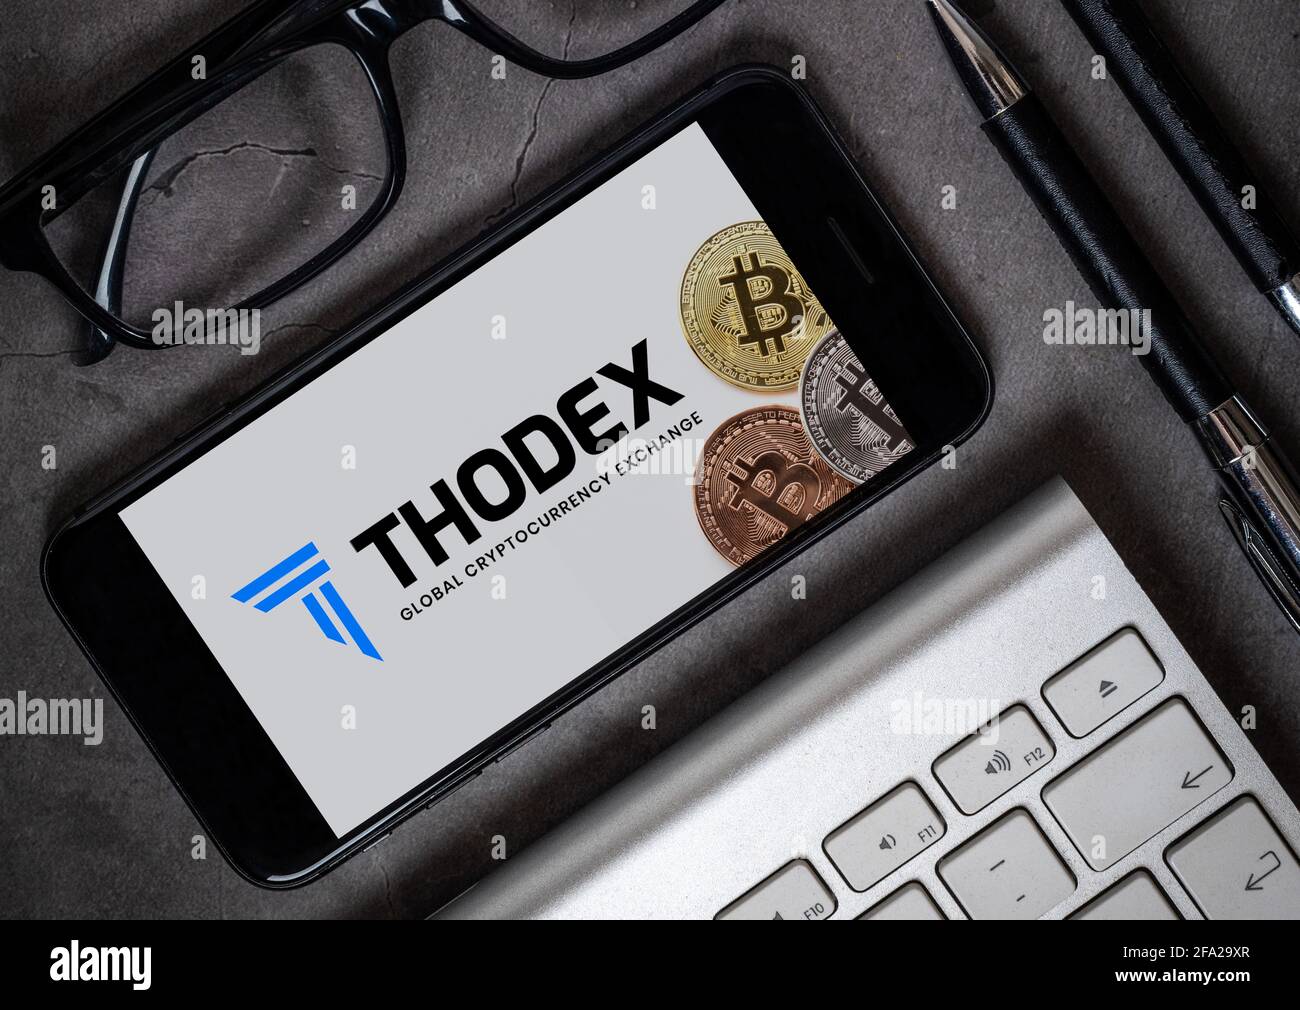 Antalya, Turchia - 21 aprile 2021: Logo Thodex e vista bitcoin sullo smartphone. Foto Stock